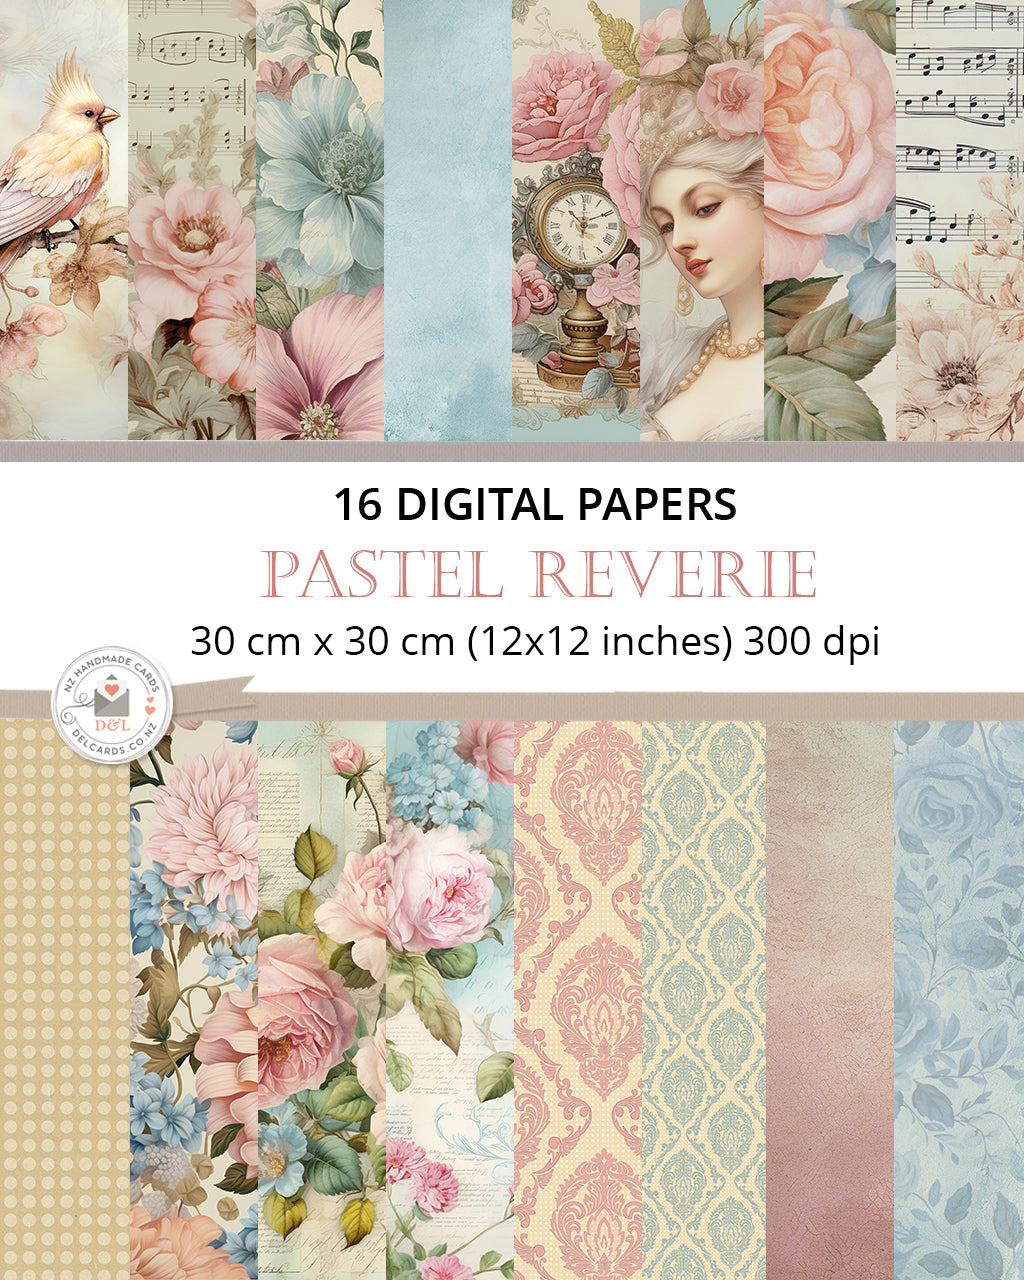 16 Digital Papers - Pastel Reverie